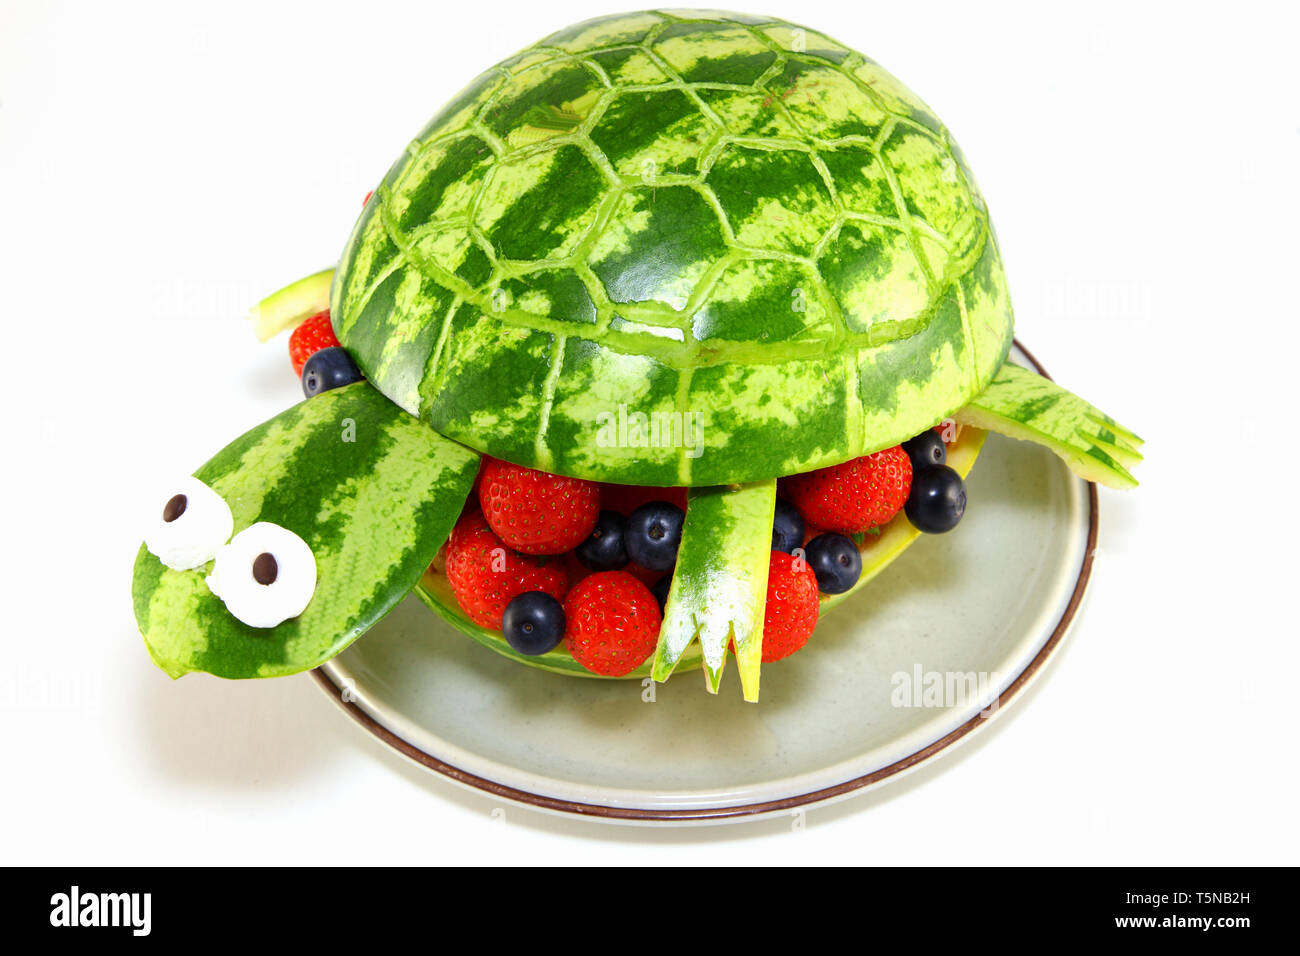 Wassermelone Schildkröte - Schildkröte aus einer Wassermelone geschnitzt Stockfoto